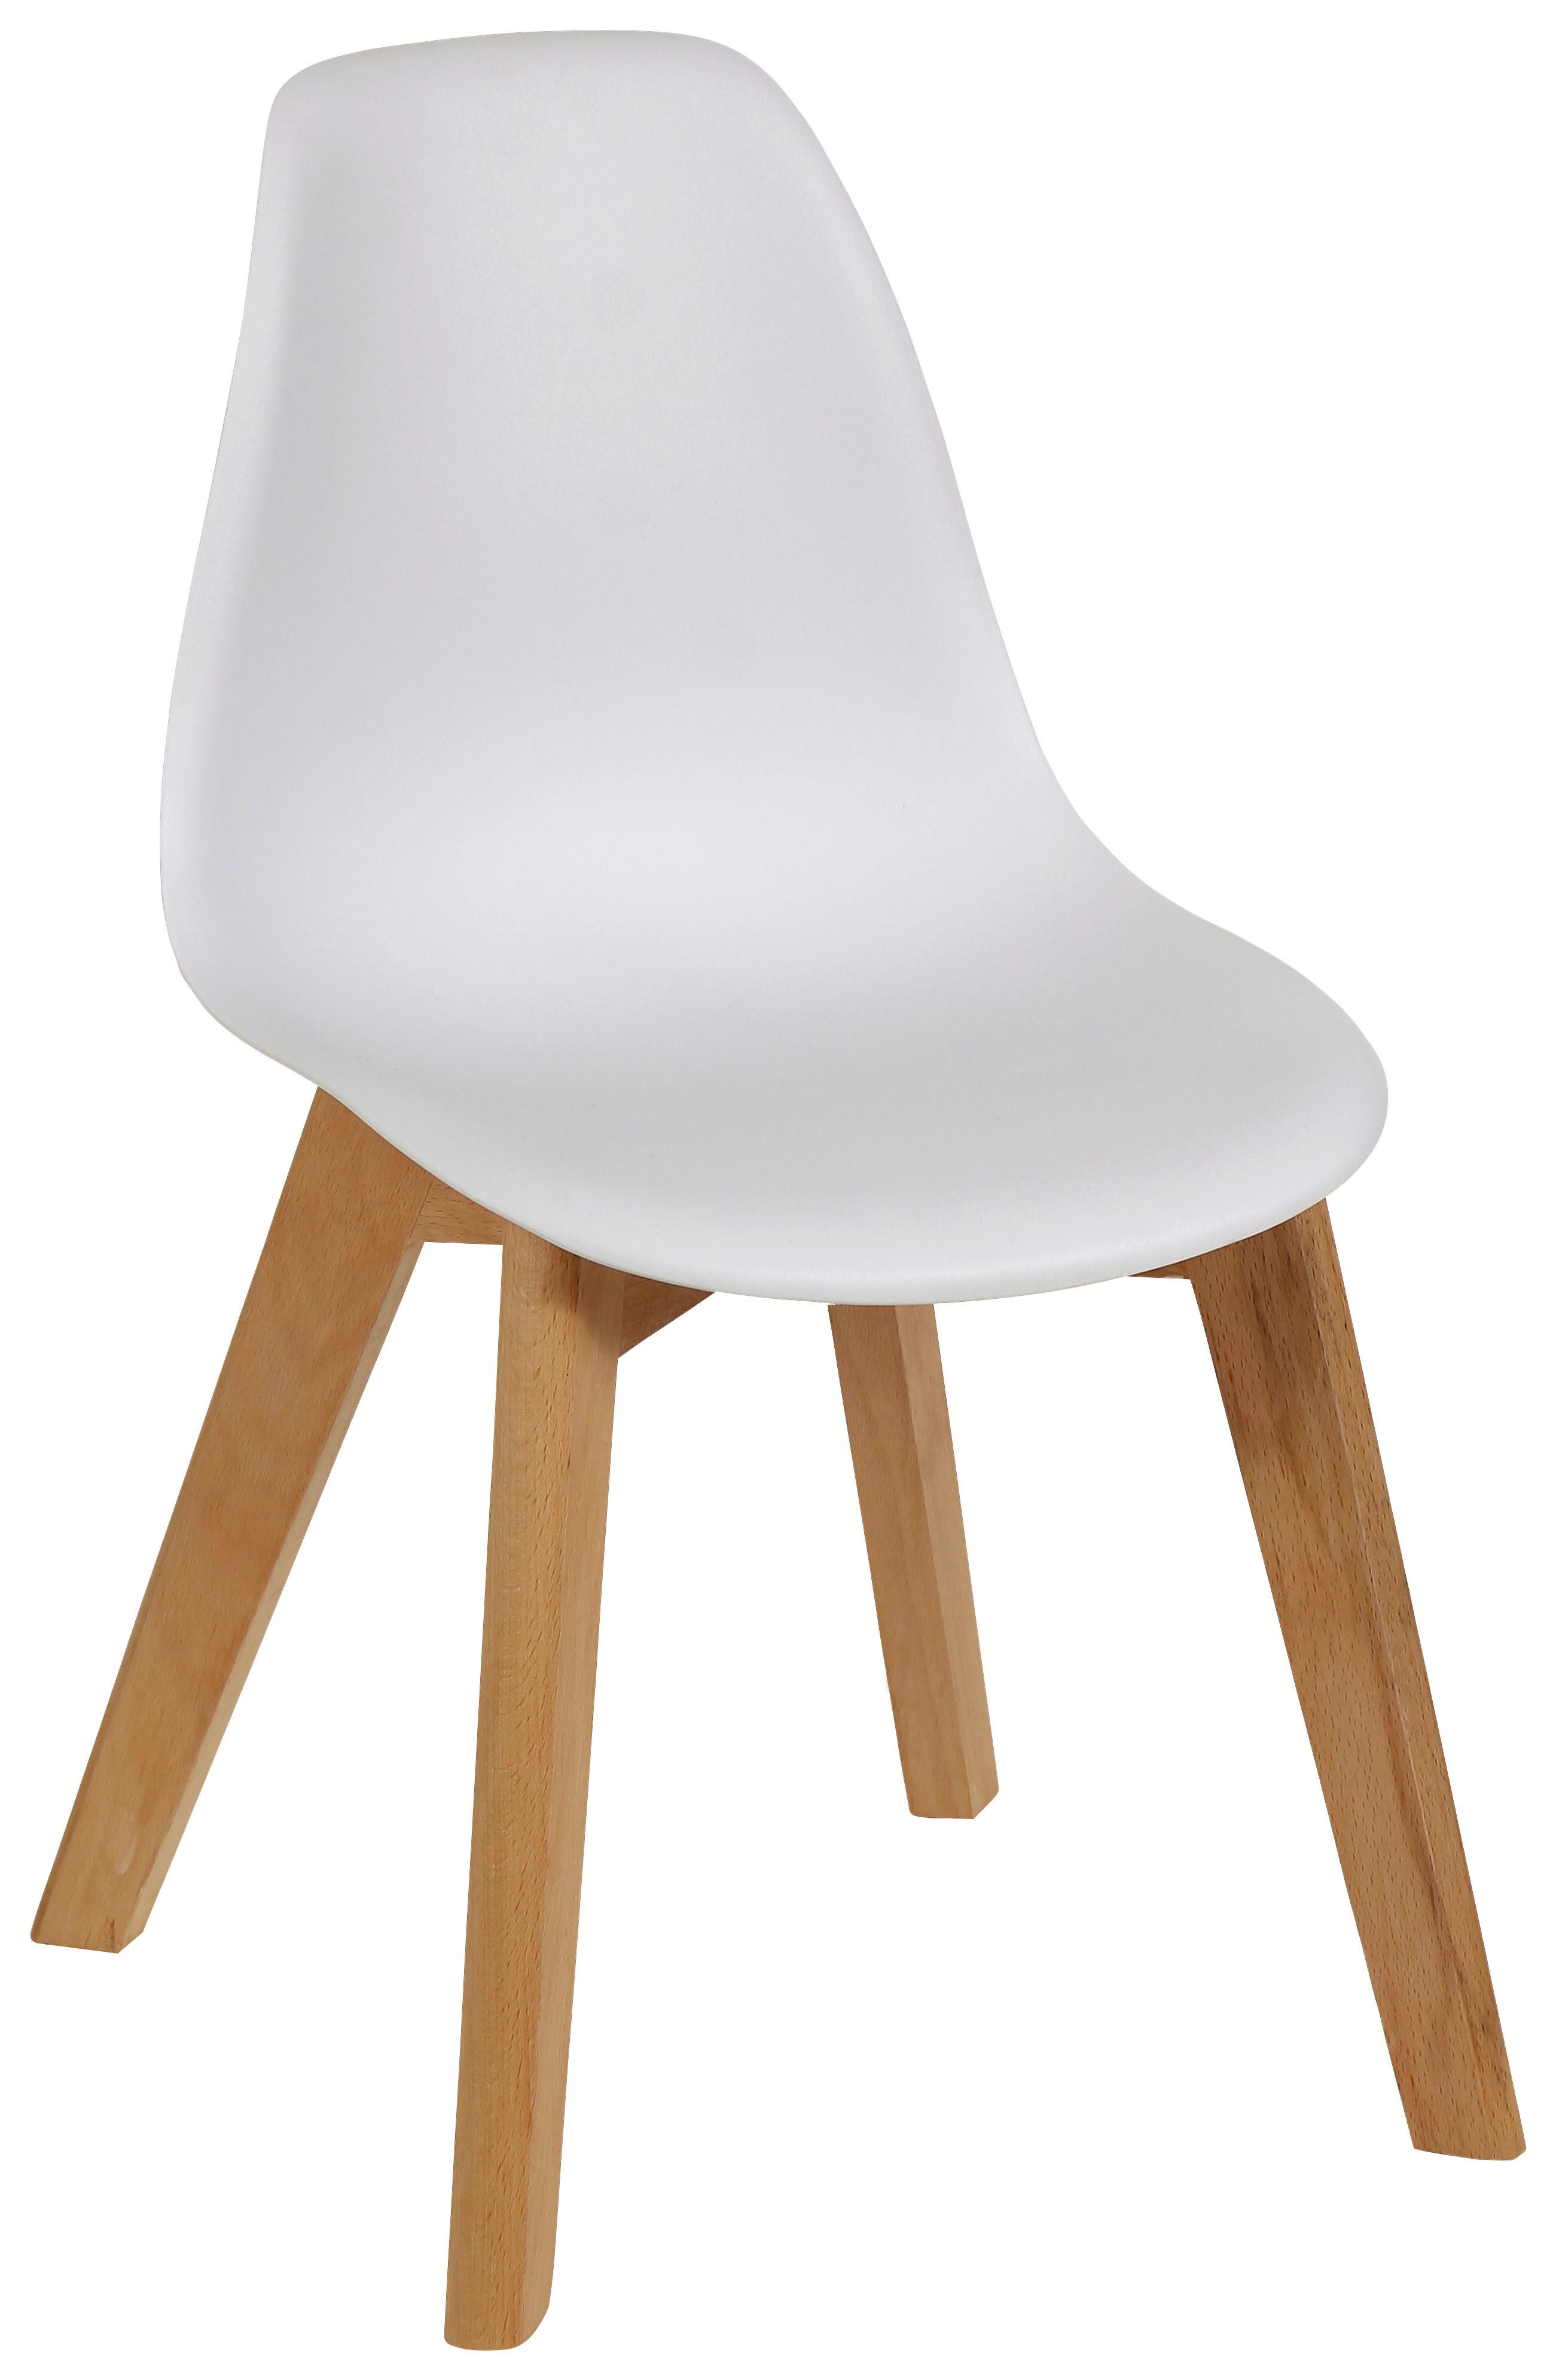 Dětská Židle Steve Bílá - bílá/přírodní barvy, dřevo/plast (32/57/30cm)